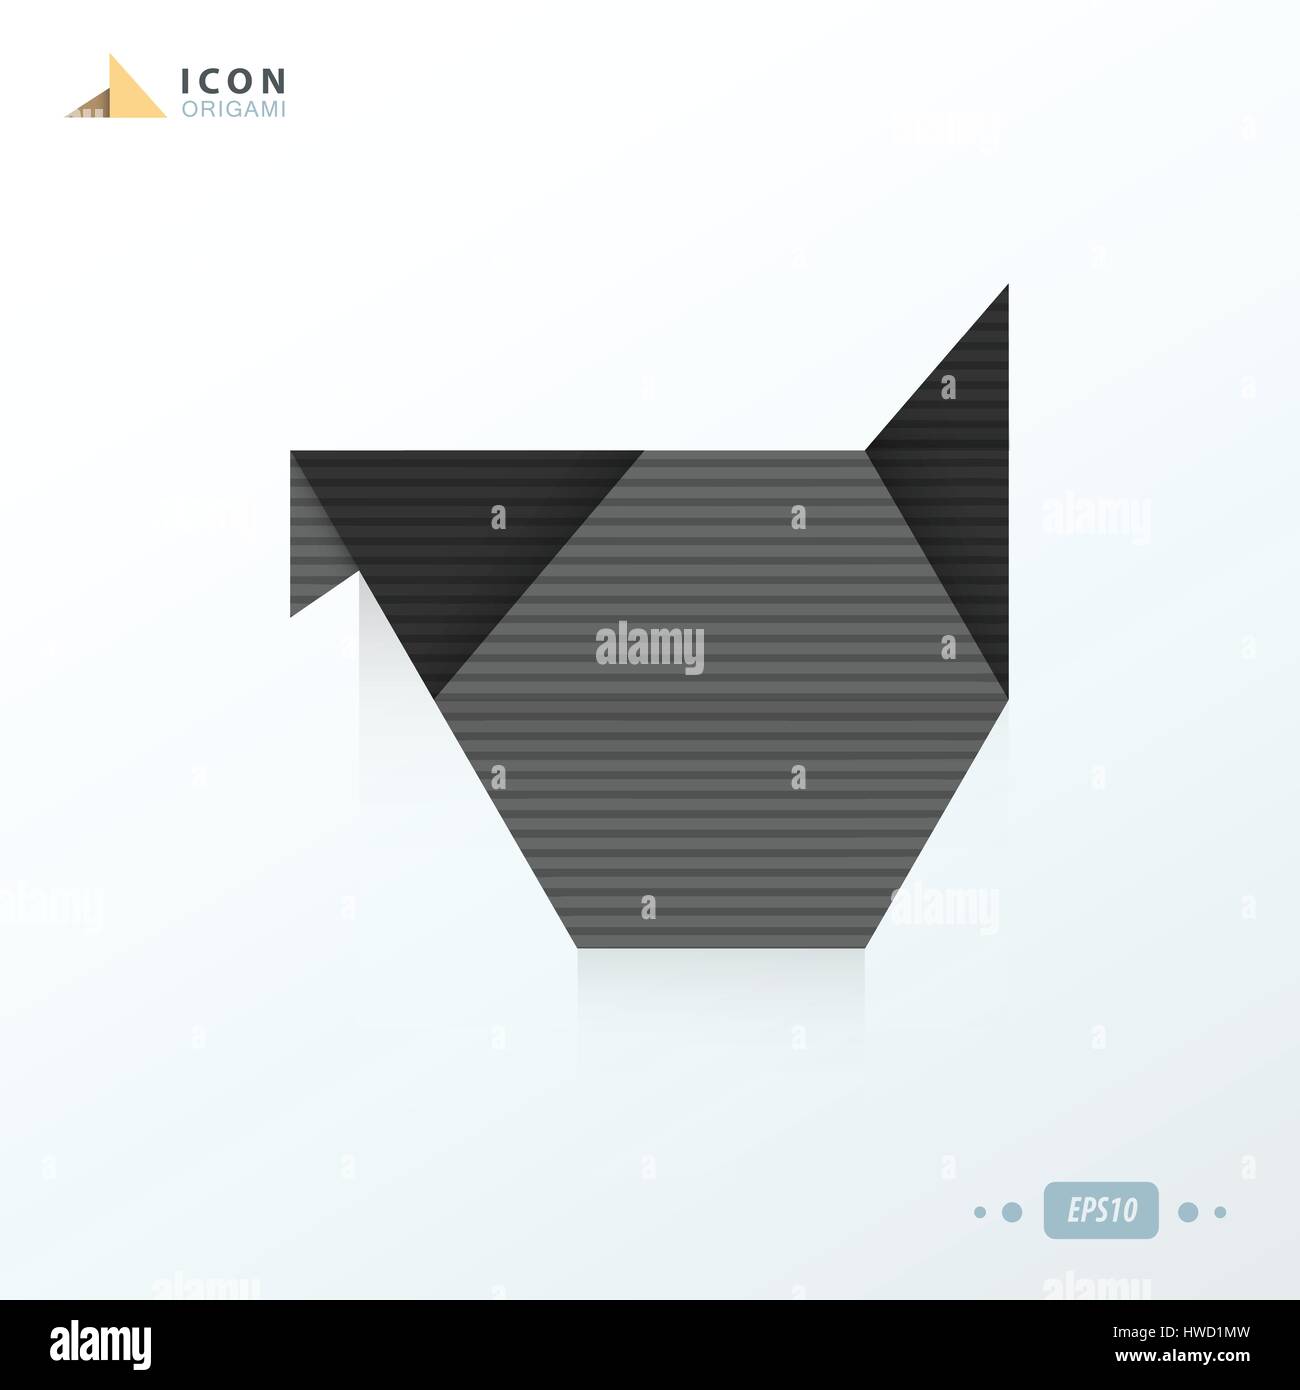 chicken icon origami black color Stock Vector